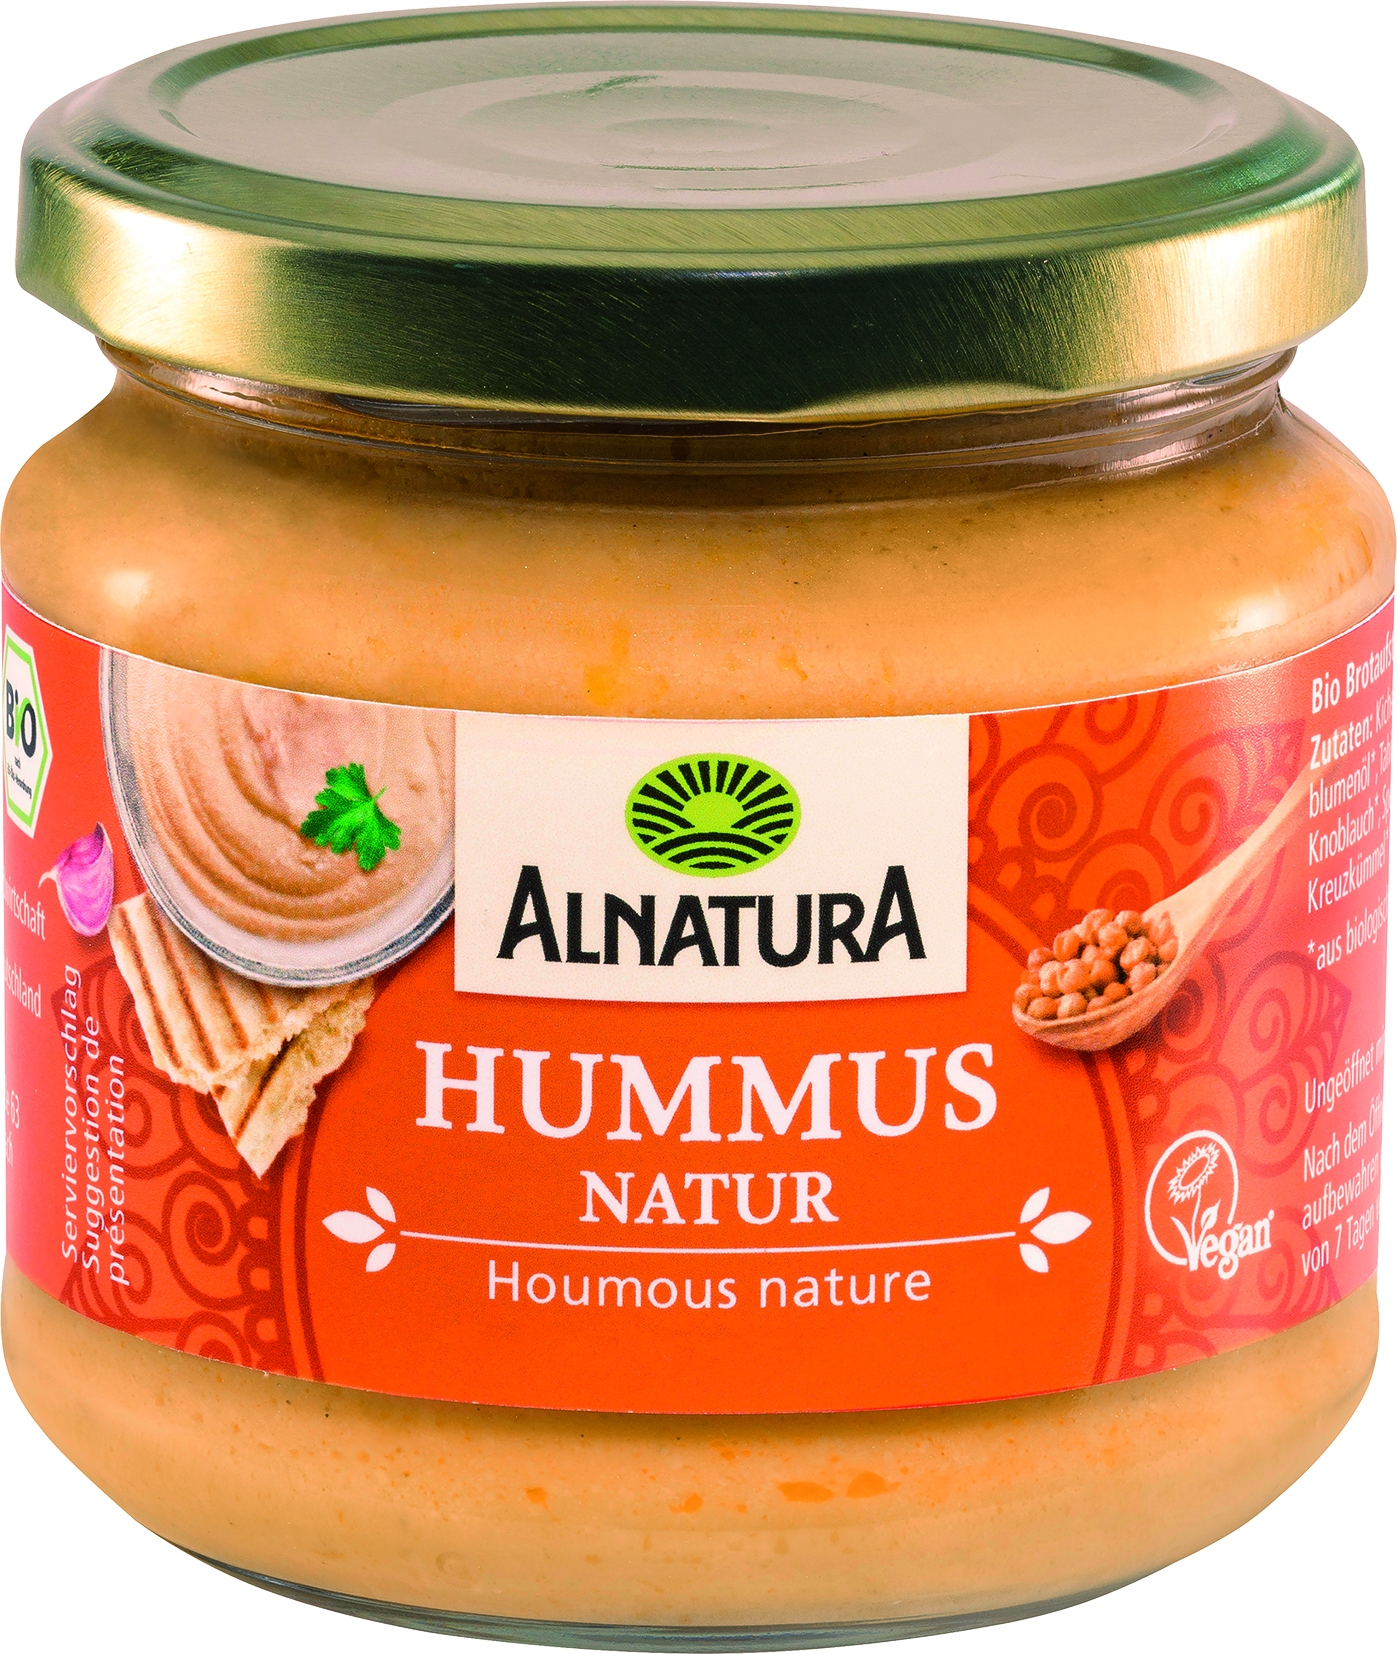 Hummus natur   